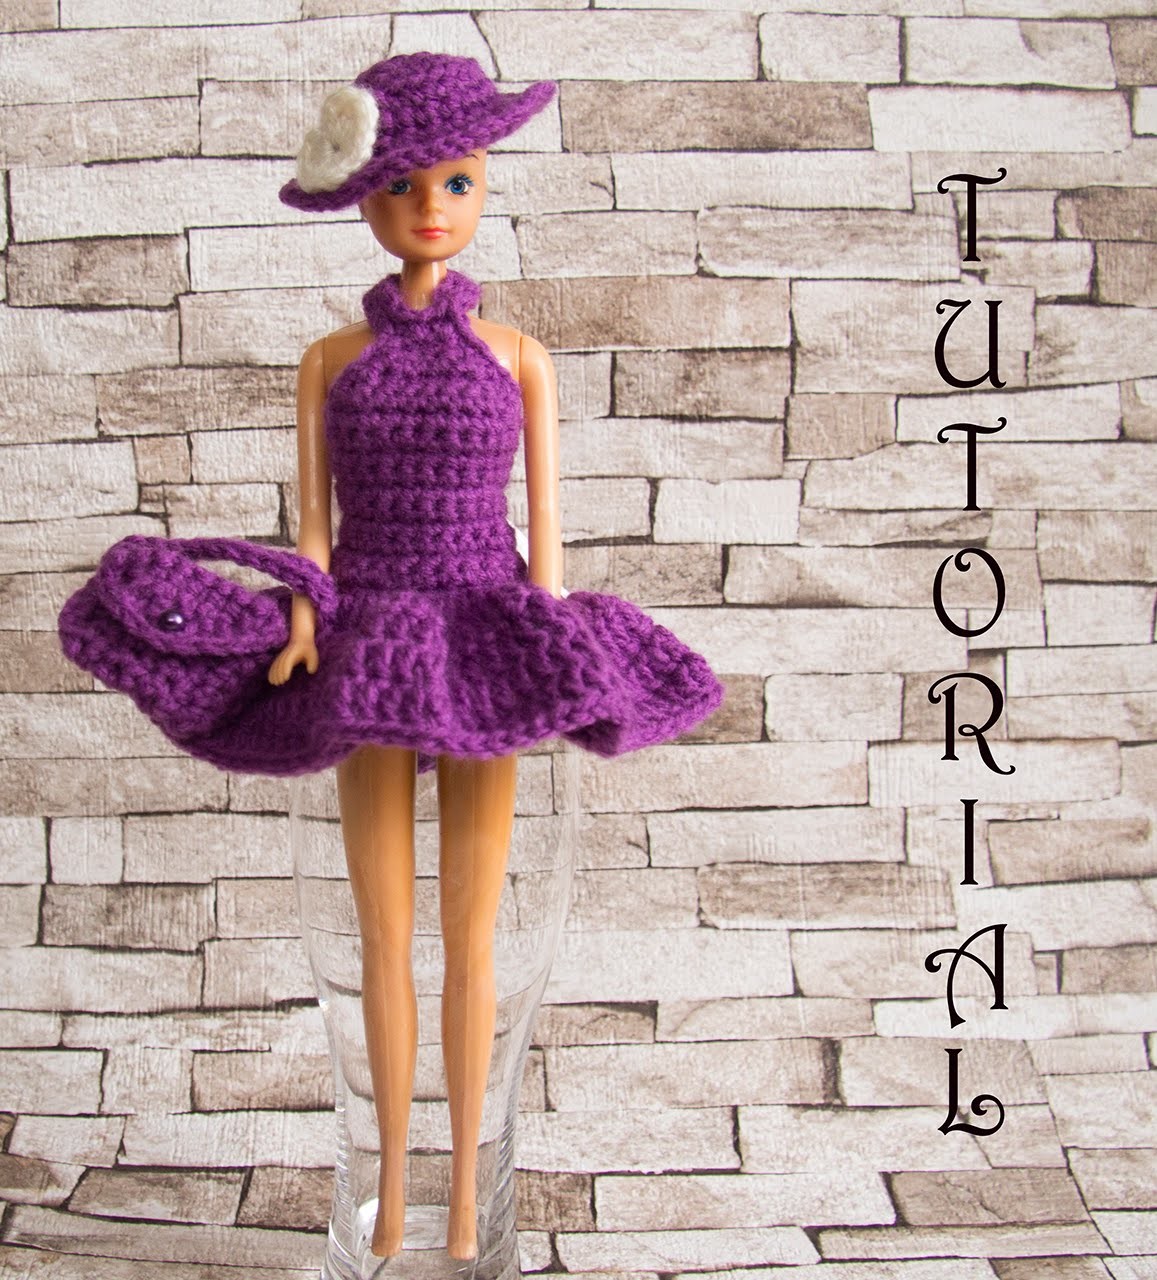 Sukienka na szydełku dla Barbie 2. + torebka + kapelusz. Crochet Barbie dress + hat+ purse. Tutorial